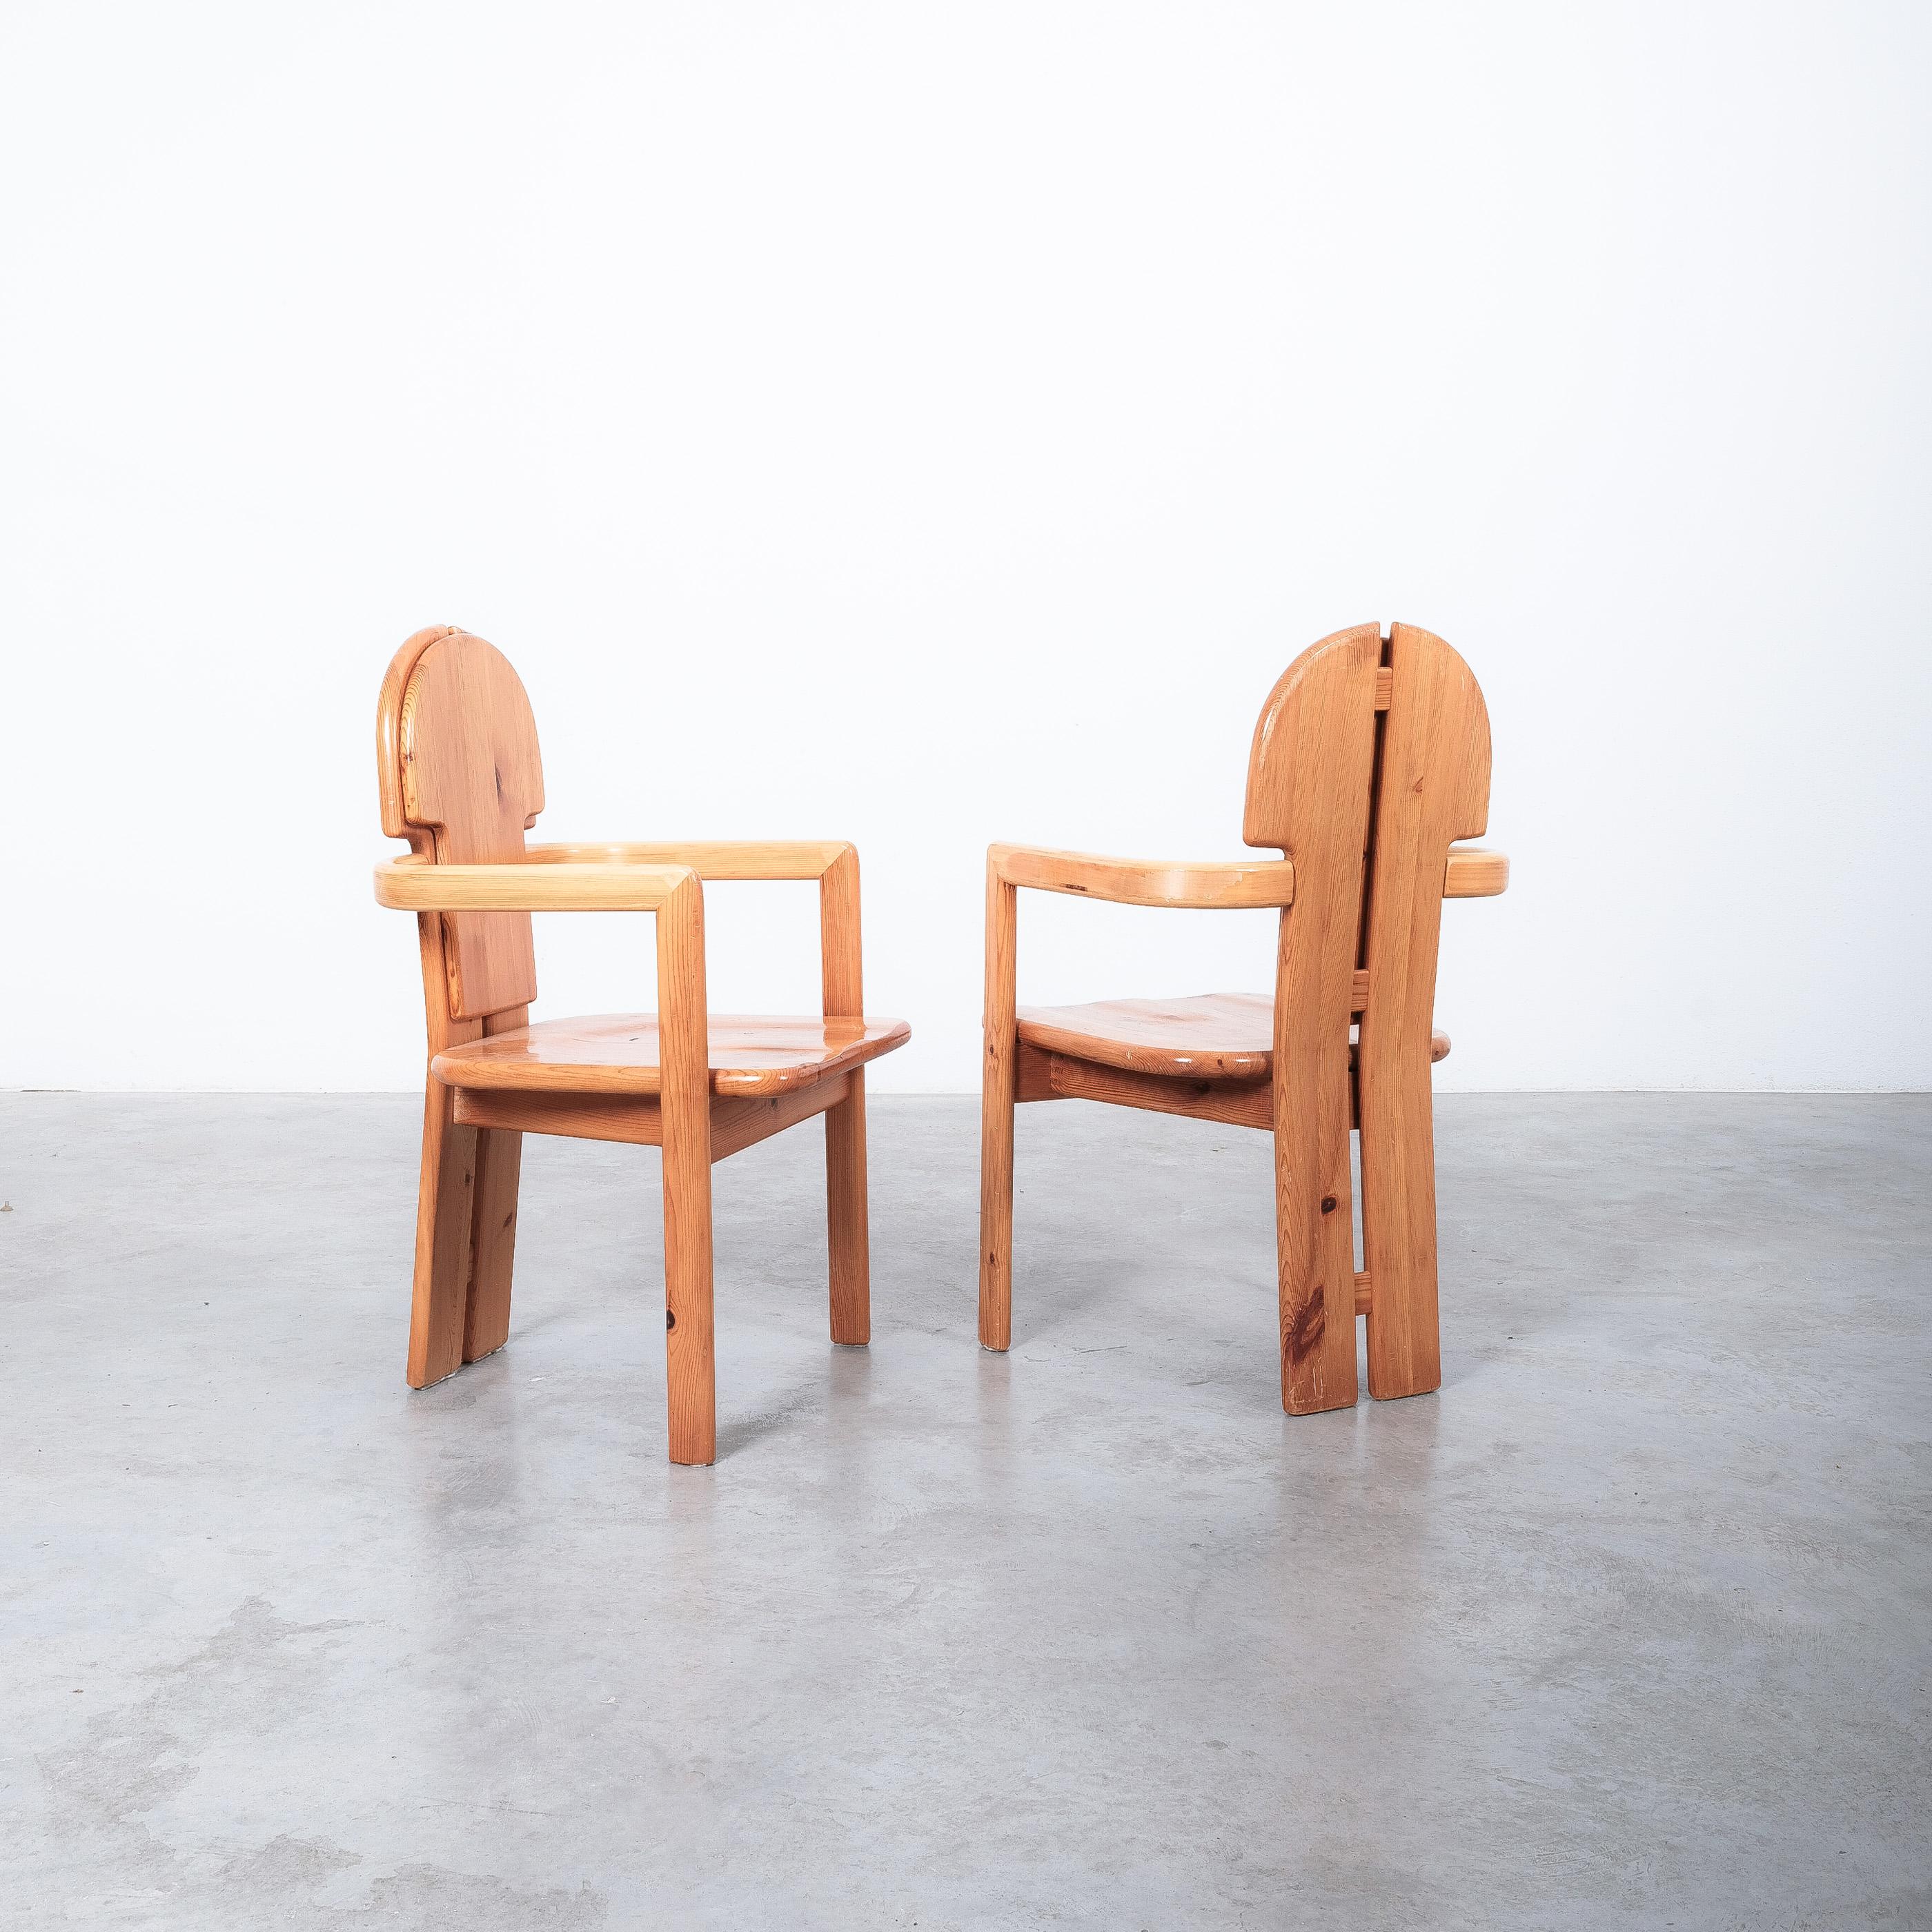 Paire de fauteuils en bois de pin de l'architecte danois Rainer Daumiller, produits par la scierie Hirtshals dans les années 1970.

Vendu comme un ensemble de 2 pièces, nous avons un autre ensemble de six chaises Daumiller disponibles qui peuvent